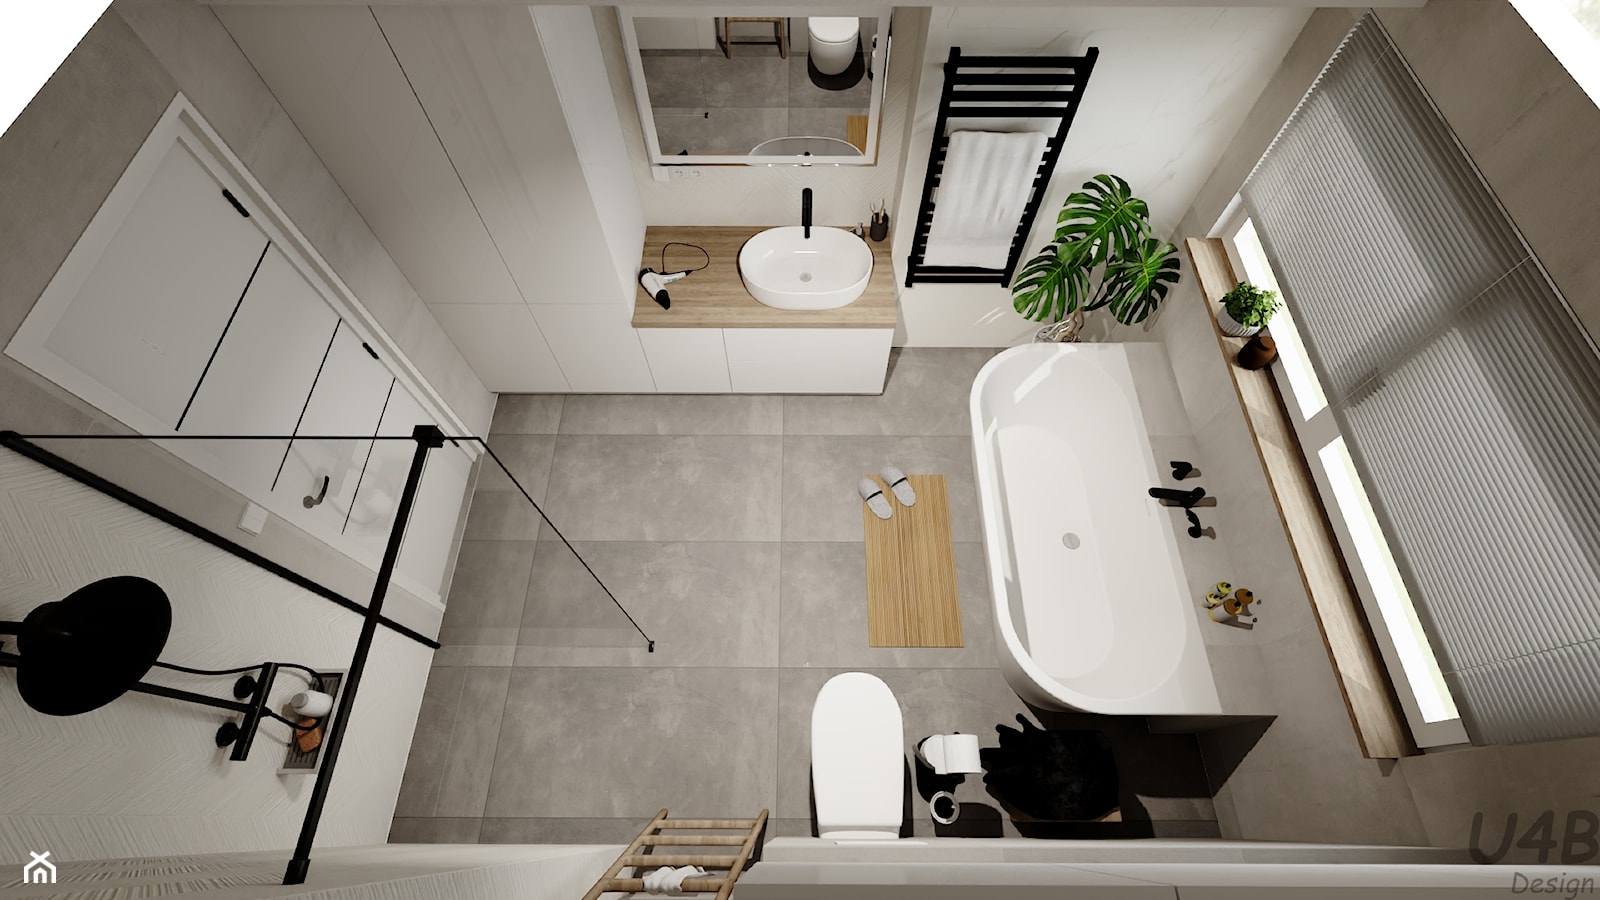 Łazienka z wanną i prysznicem - zdjęcie od U4B Design Karolina Bonk - Homebook